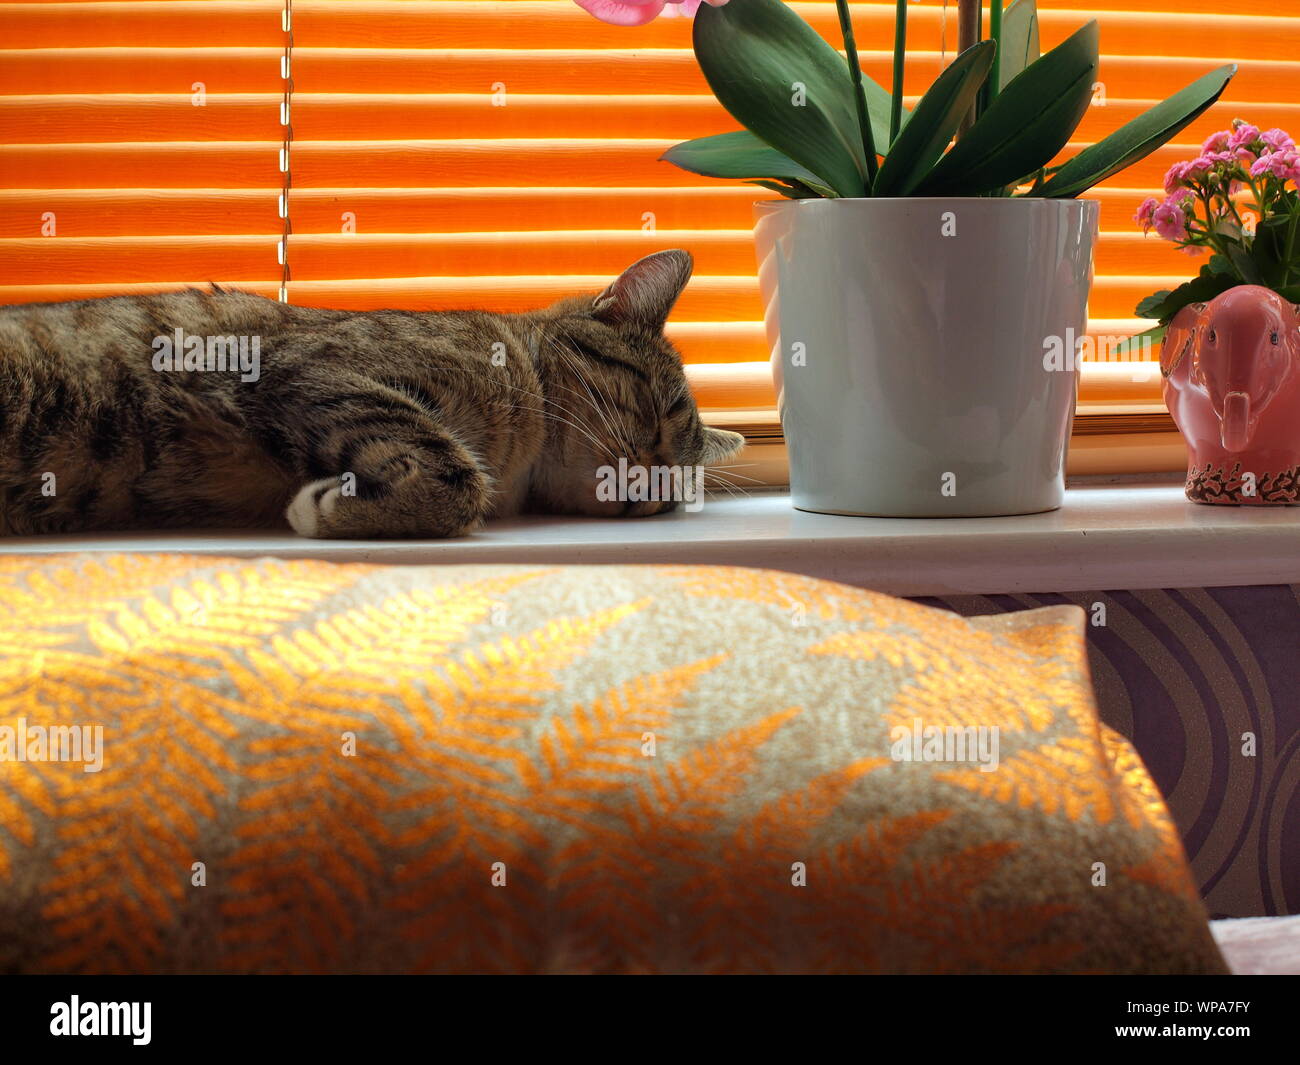 Männliche/tomcat Ägyptischen Mau Schlaf-/Napping auf einer Fensterbank in ein Inlands-/home Einstellung Felis catus Stockfoto